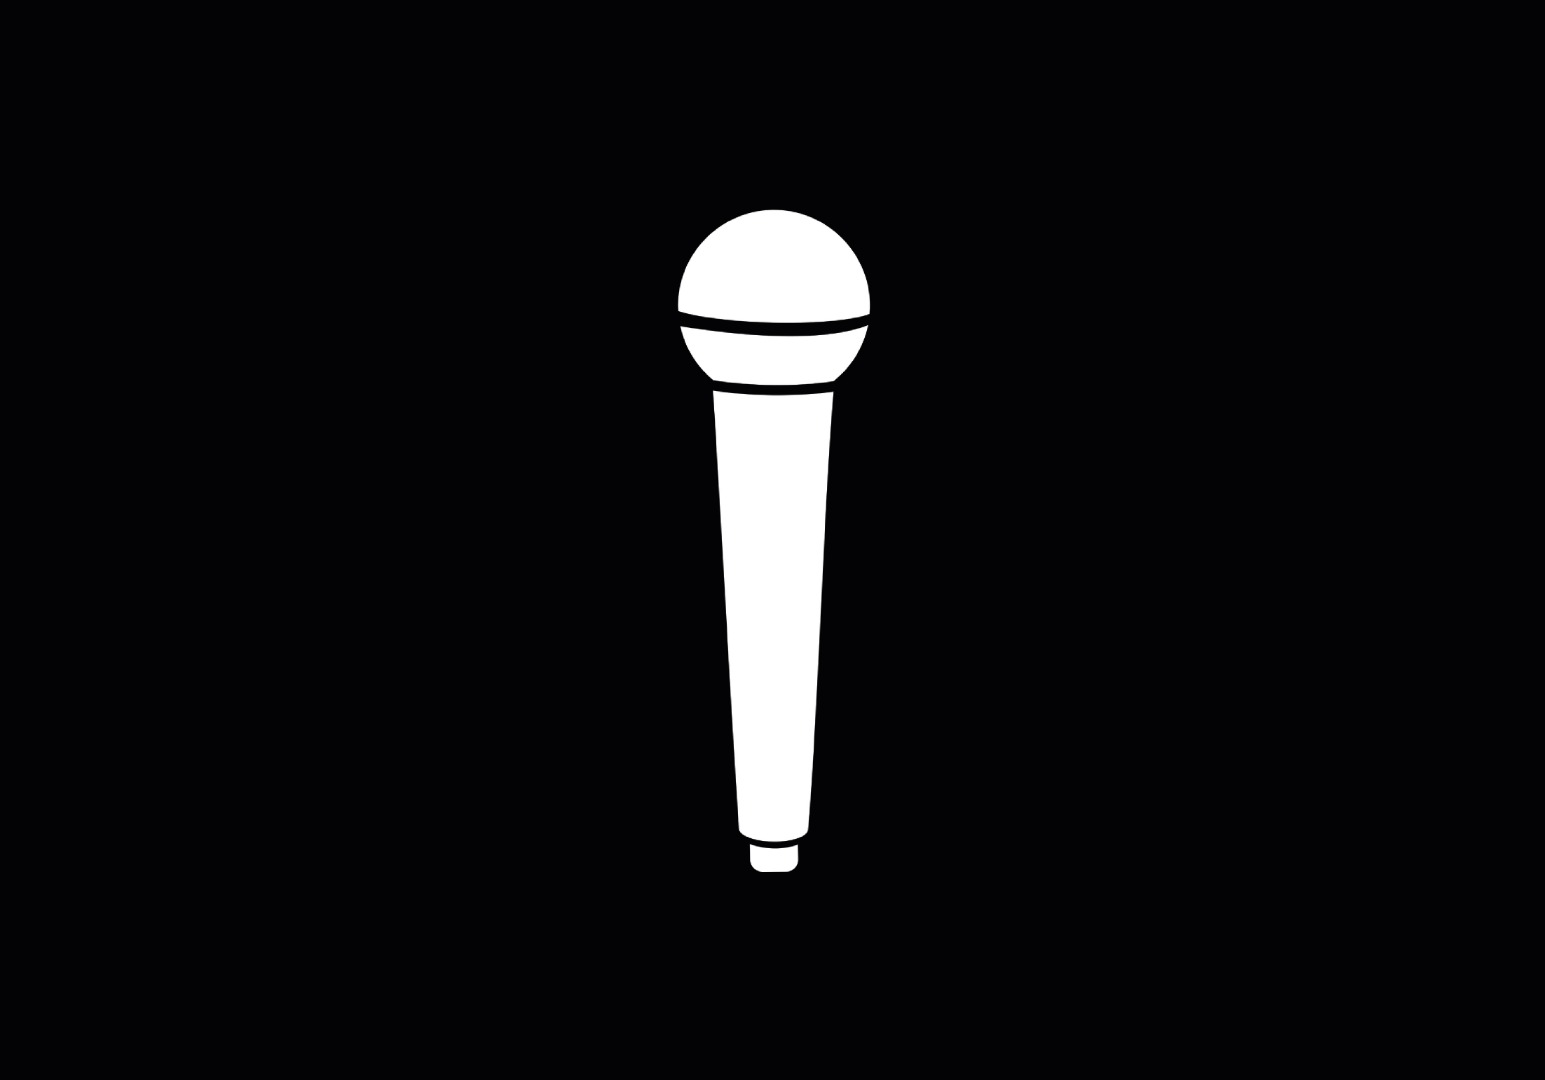 Ikona zajęć wokalnych. Obraz OpenClipart-Vectors z Pixabay.